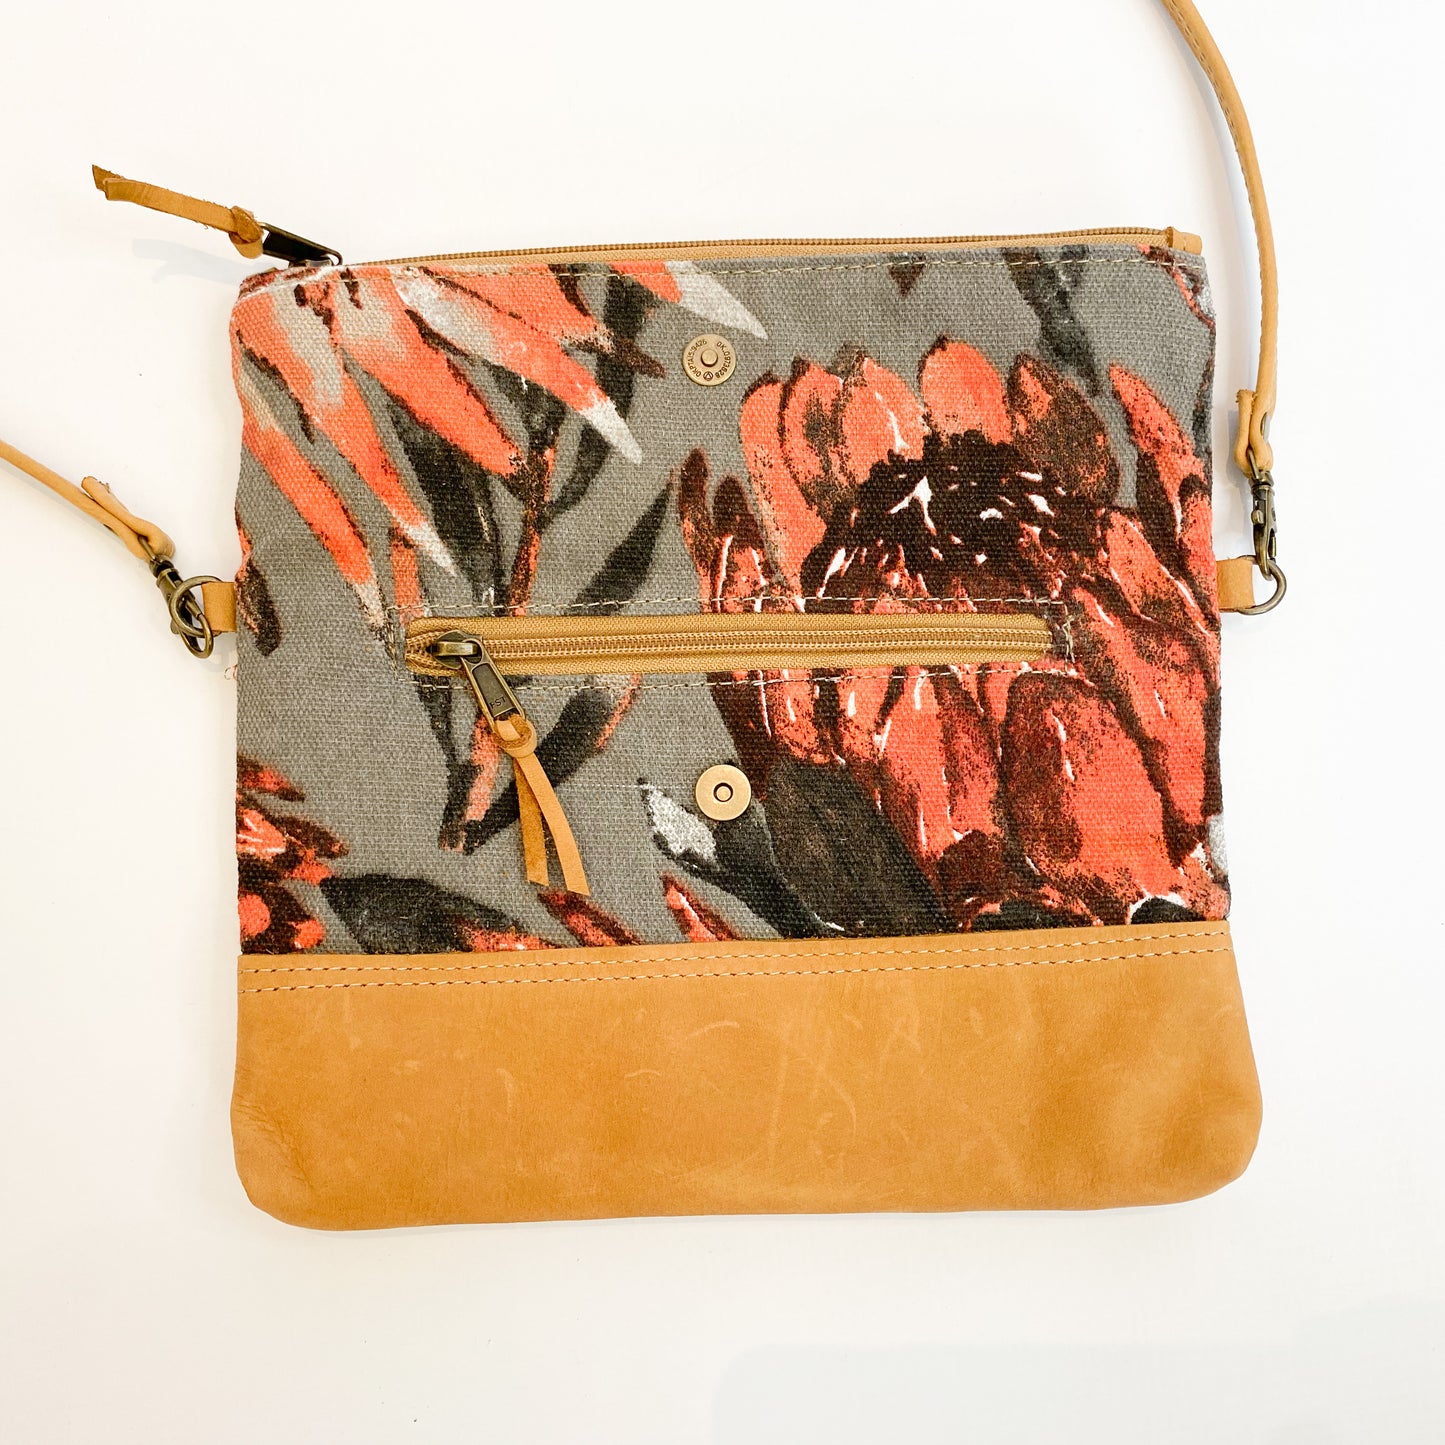 Gia leather and protea foldover bag